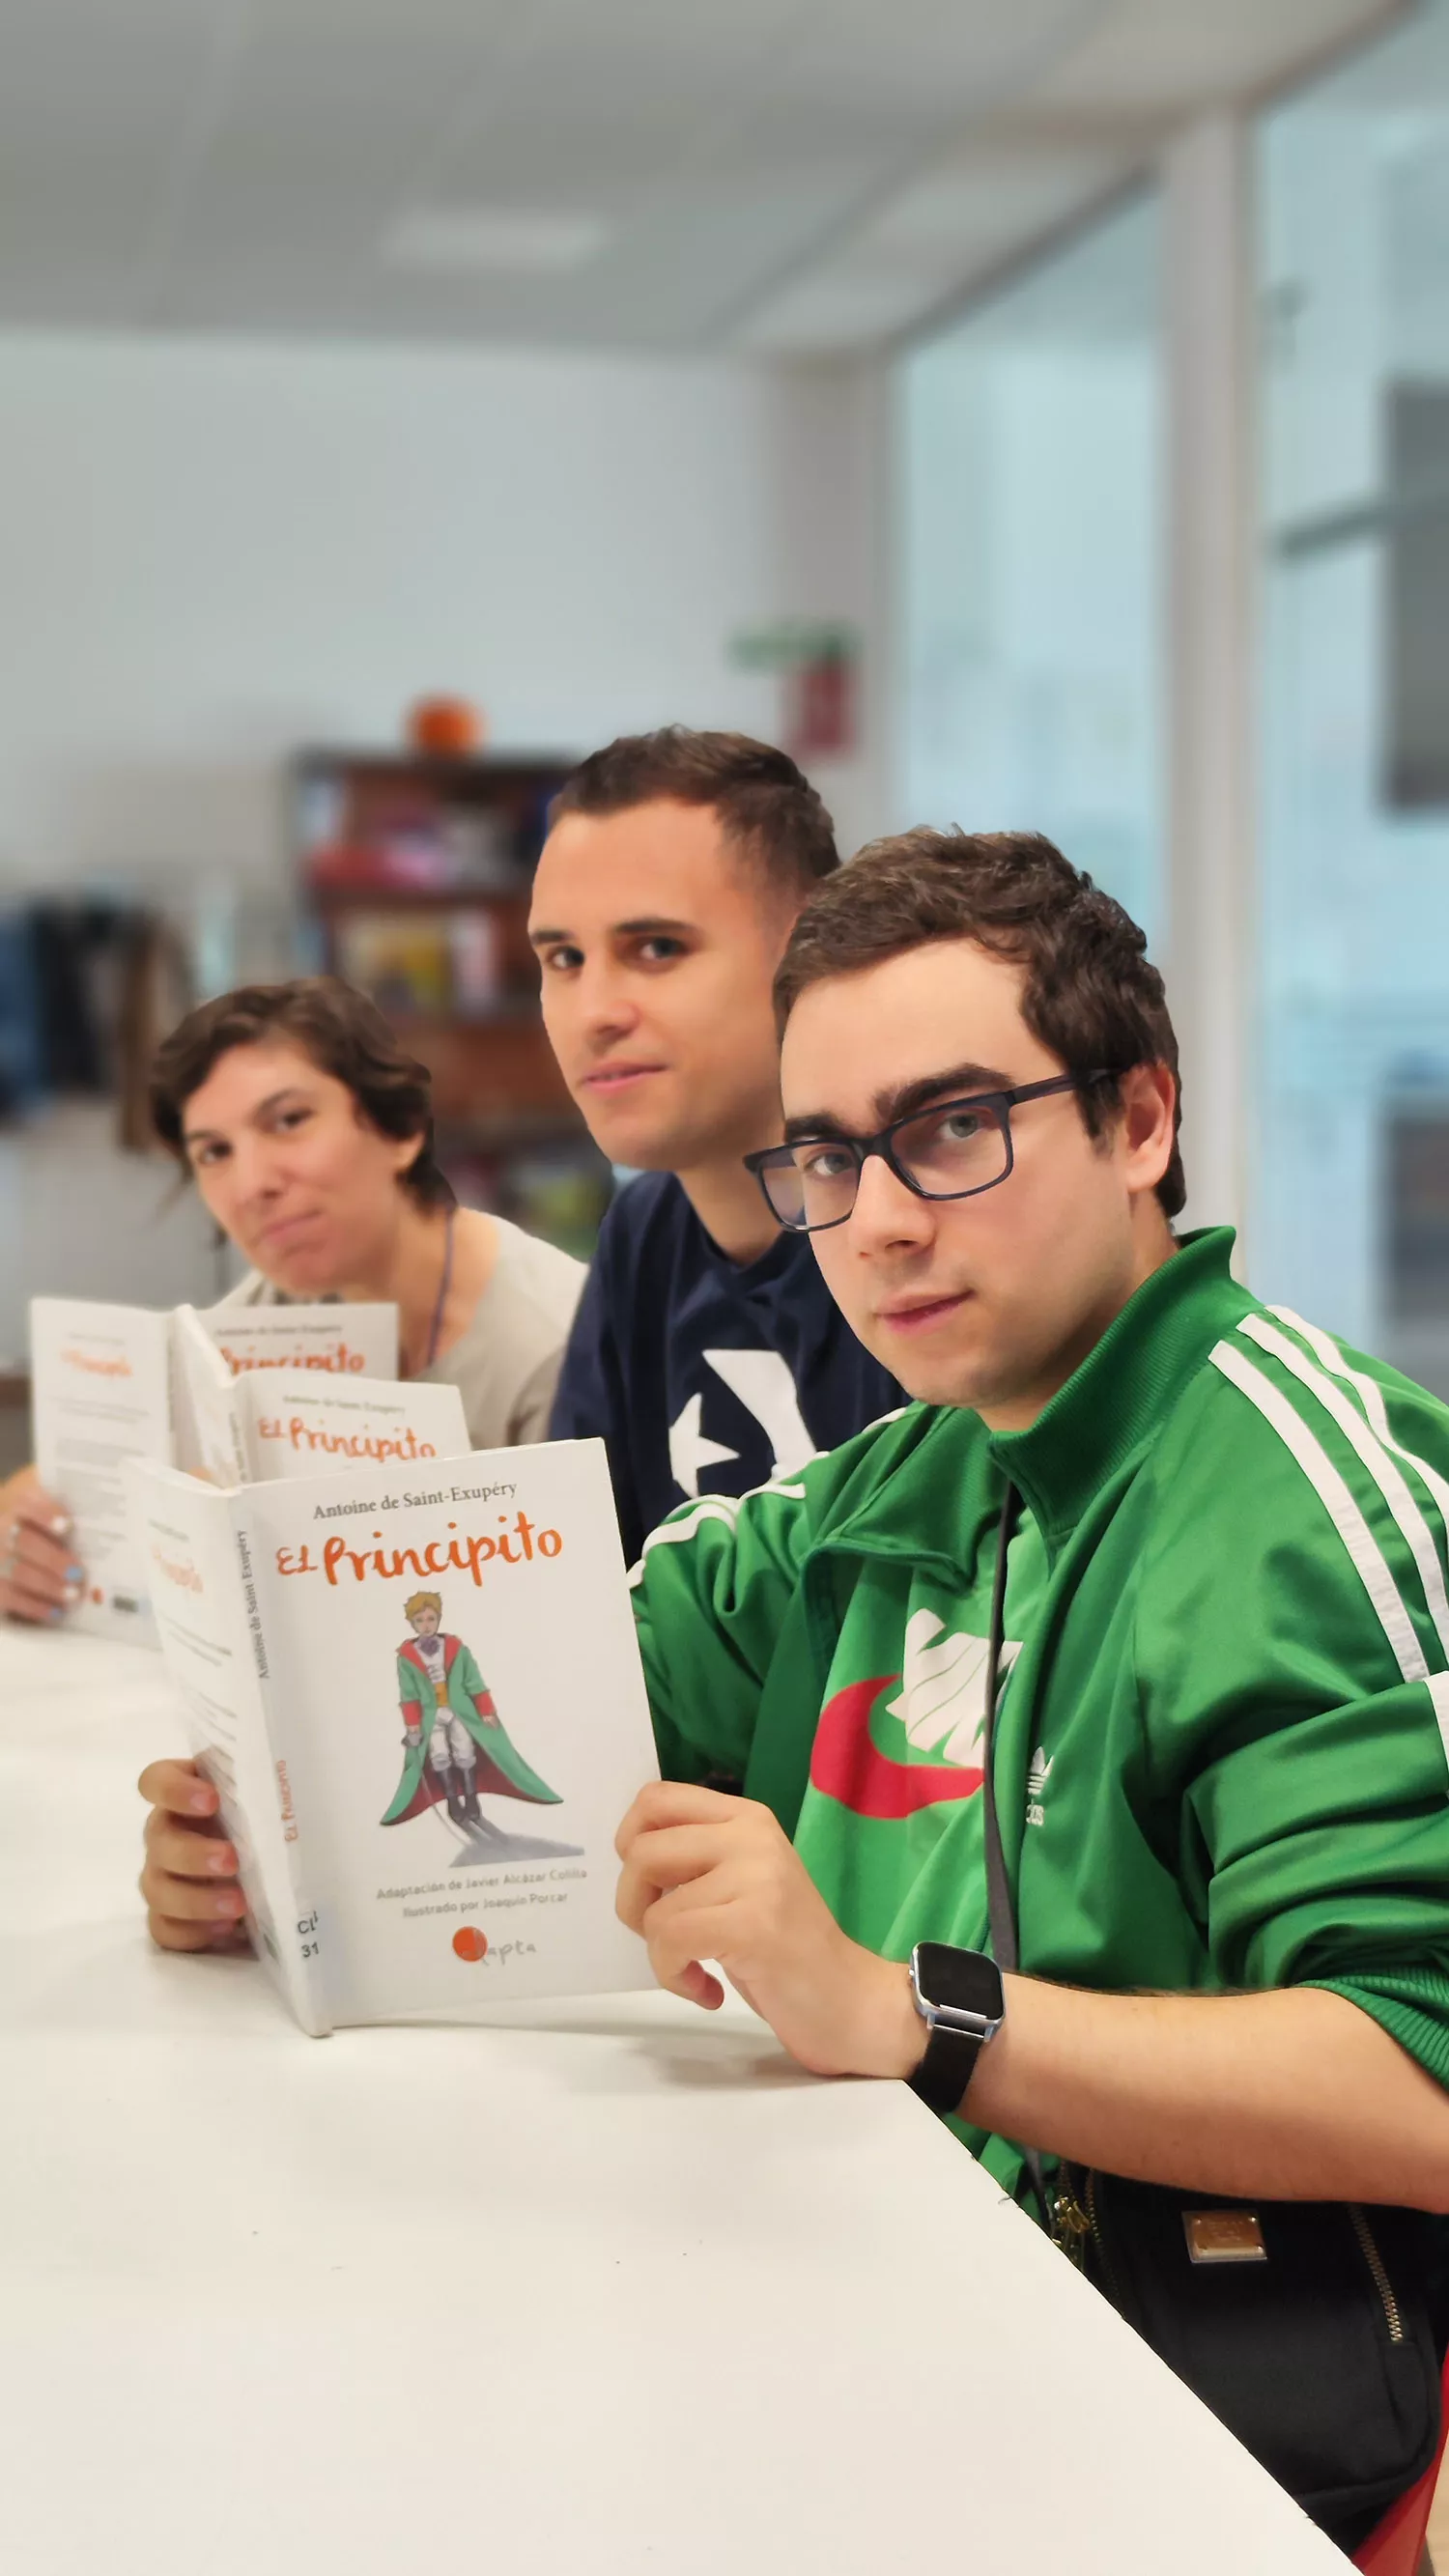 Asprona Bierzo pone el toque inclusivo a la Feria de Libro de Ponferrada con la lectura colectiva de El Principito